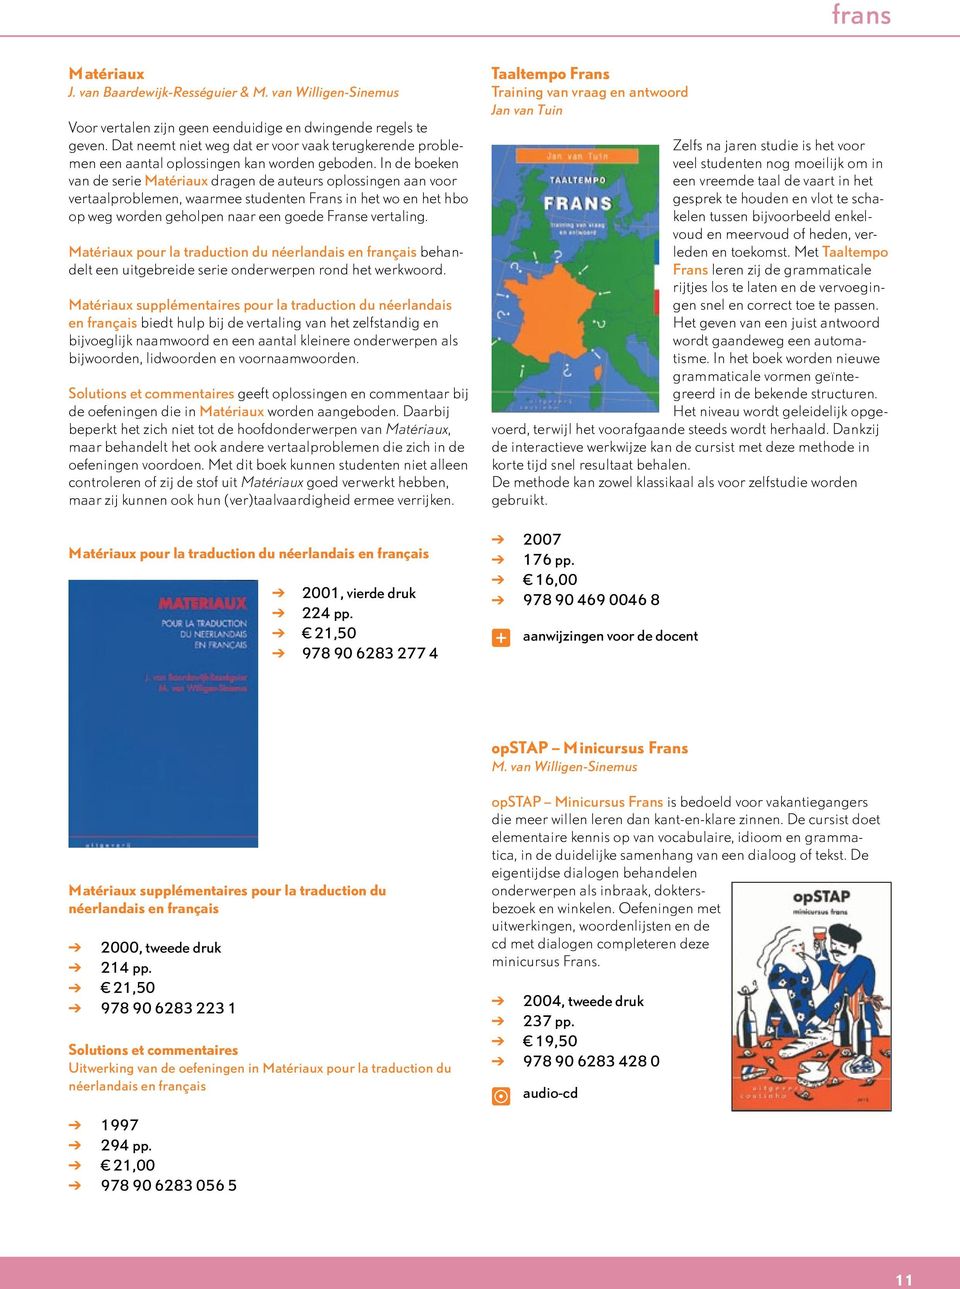 In de boeken van de serie Matériaux dragen de auteurs oplossingen aan voor vertaalproblemen, waarmee studenten Frans in het wo en het hbo op weg worden geholpen naar een goede Franse vertaling.